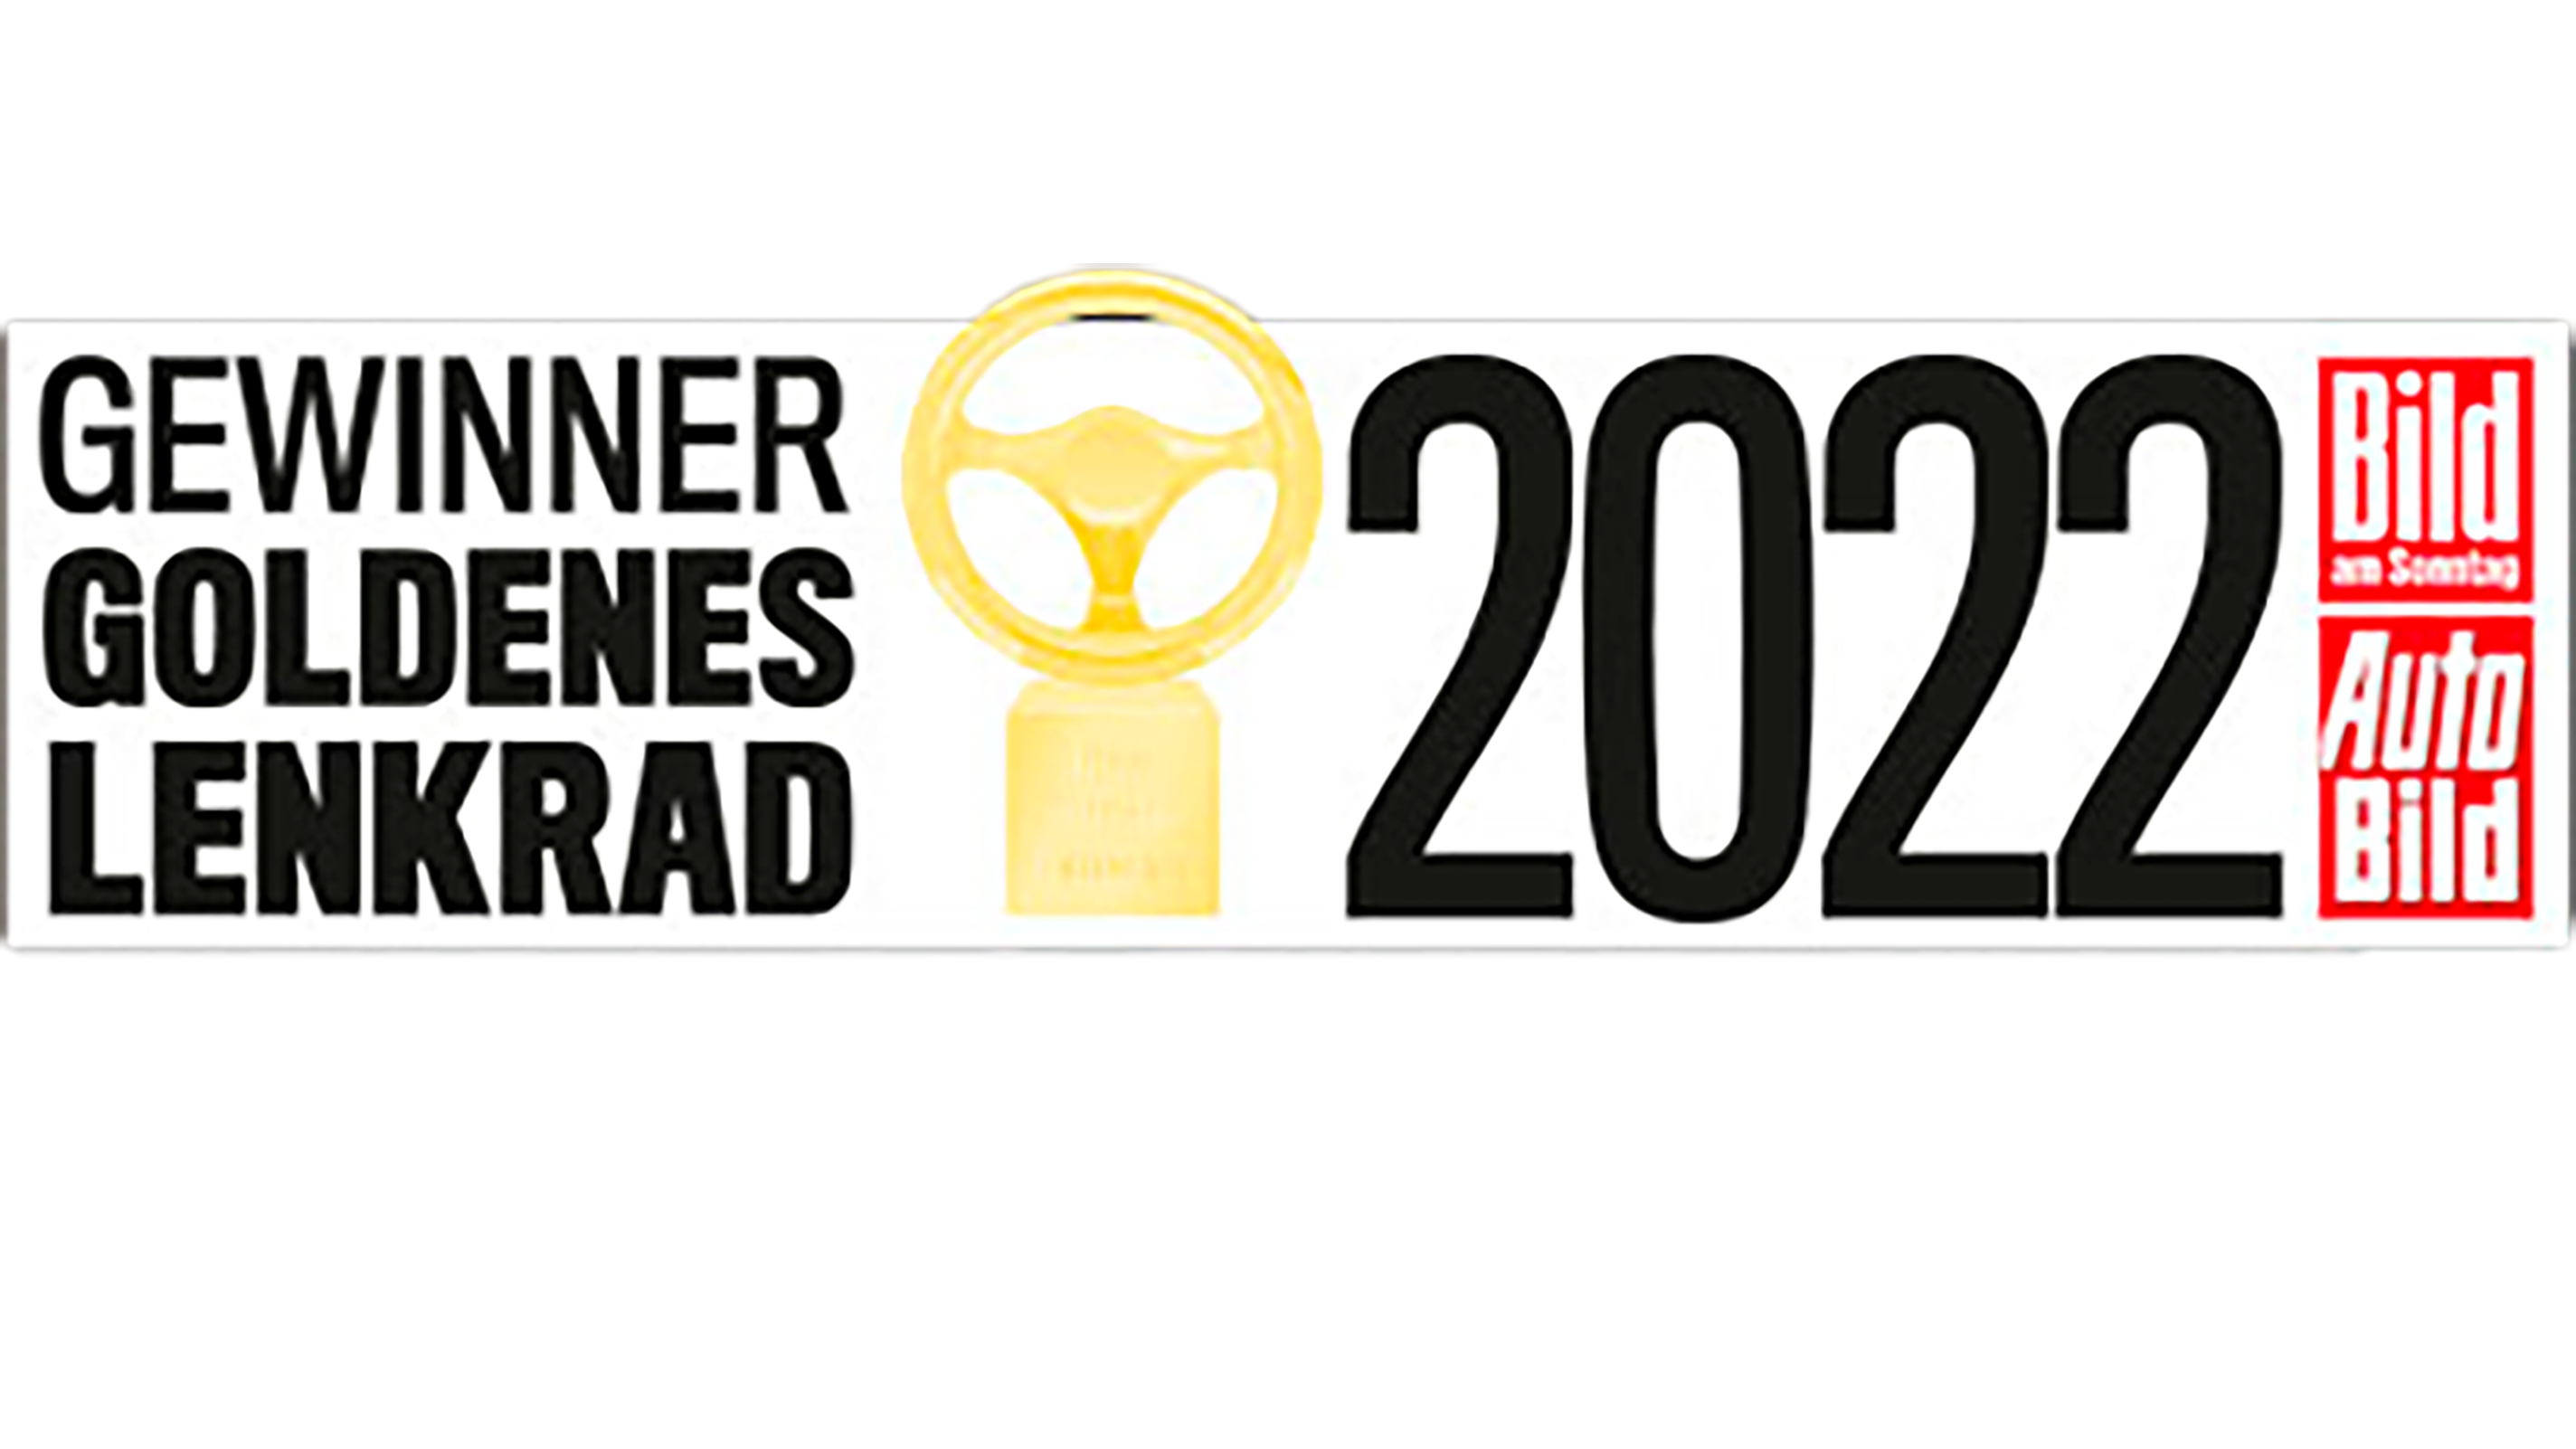 Kia triumferer ved prisuddelingen “Goldenes Lenkrad 2022”